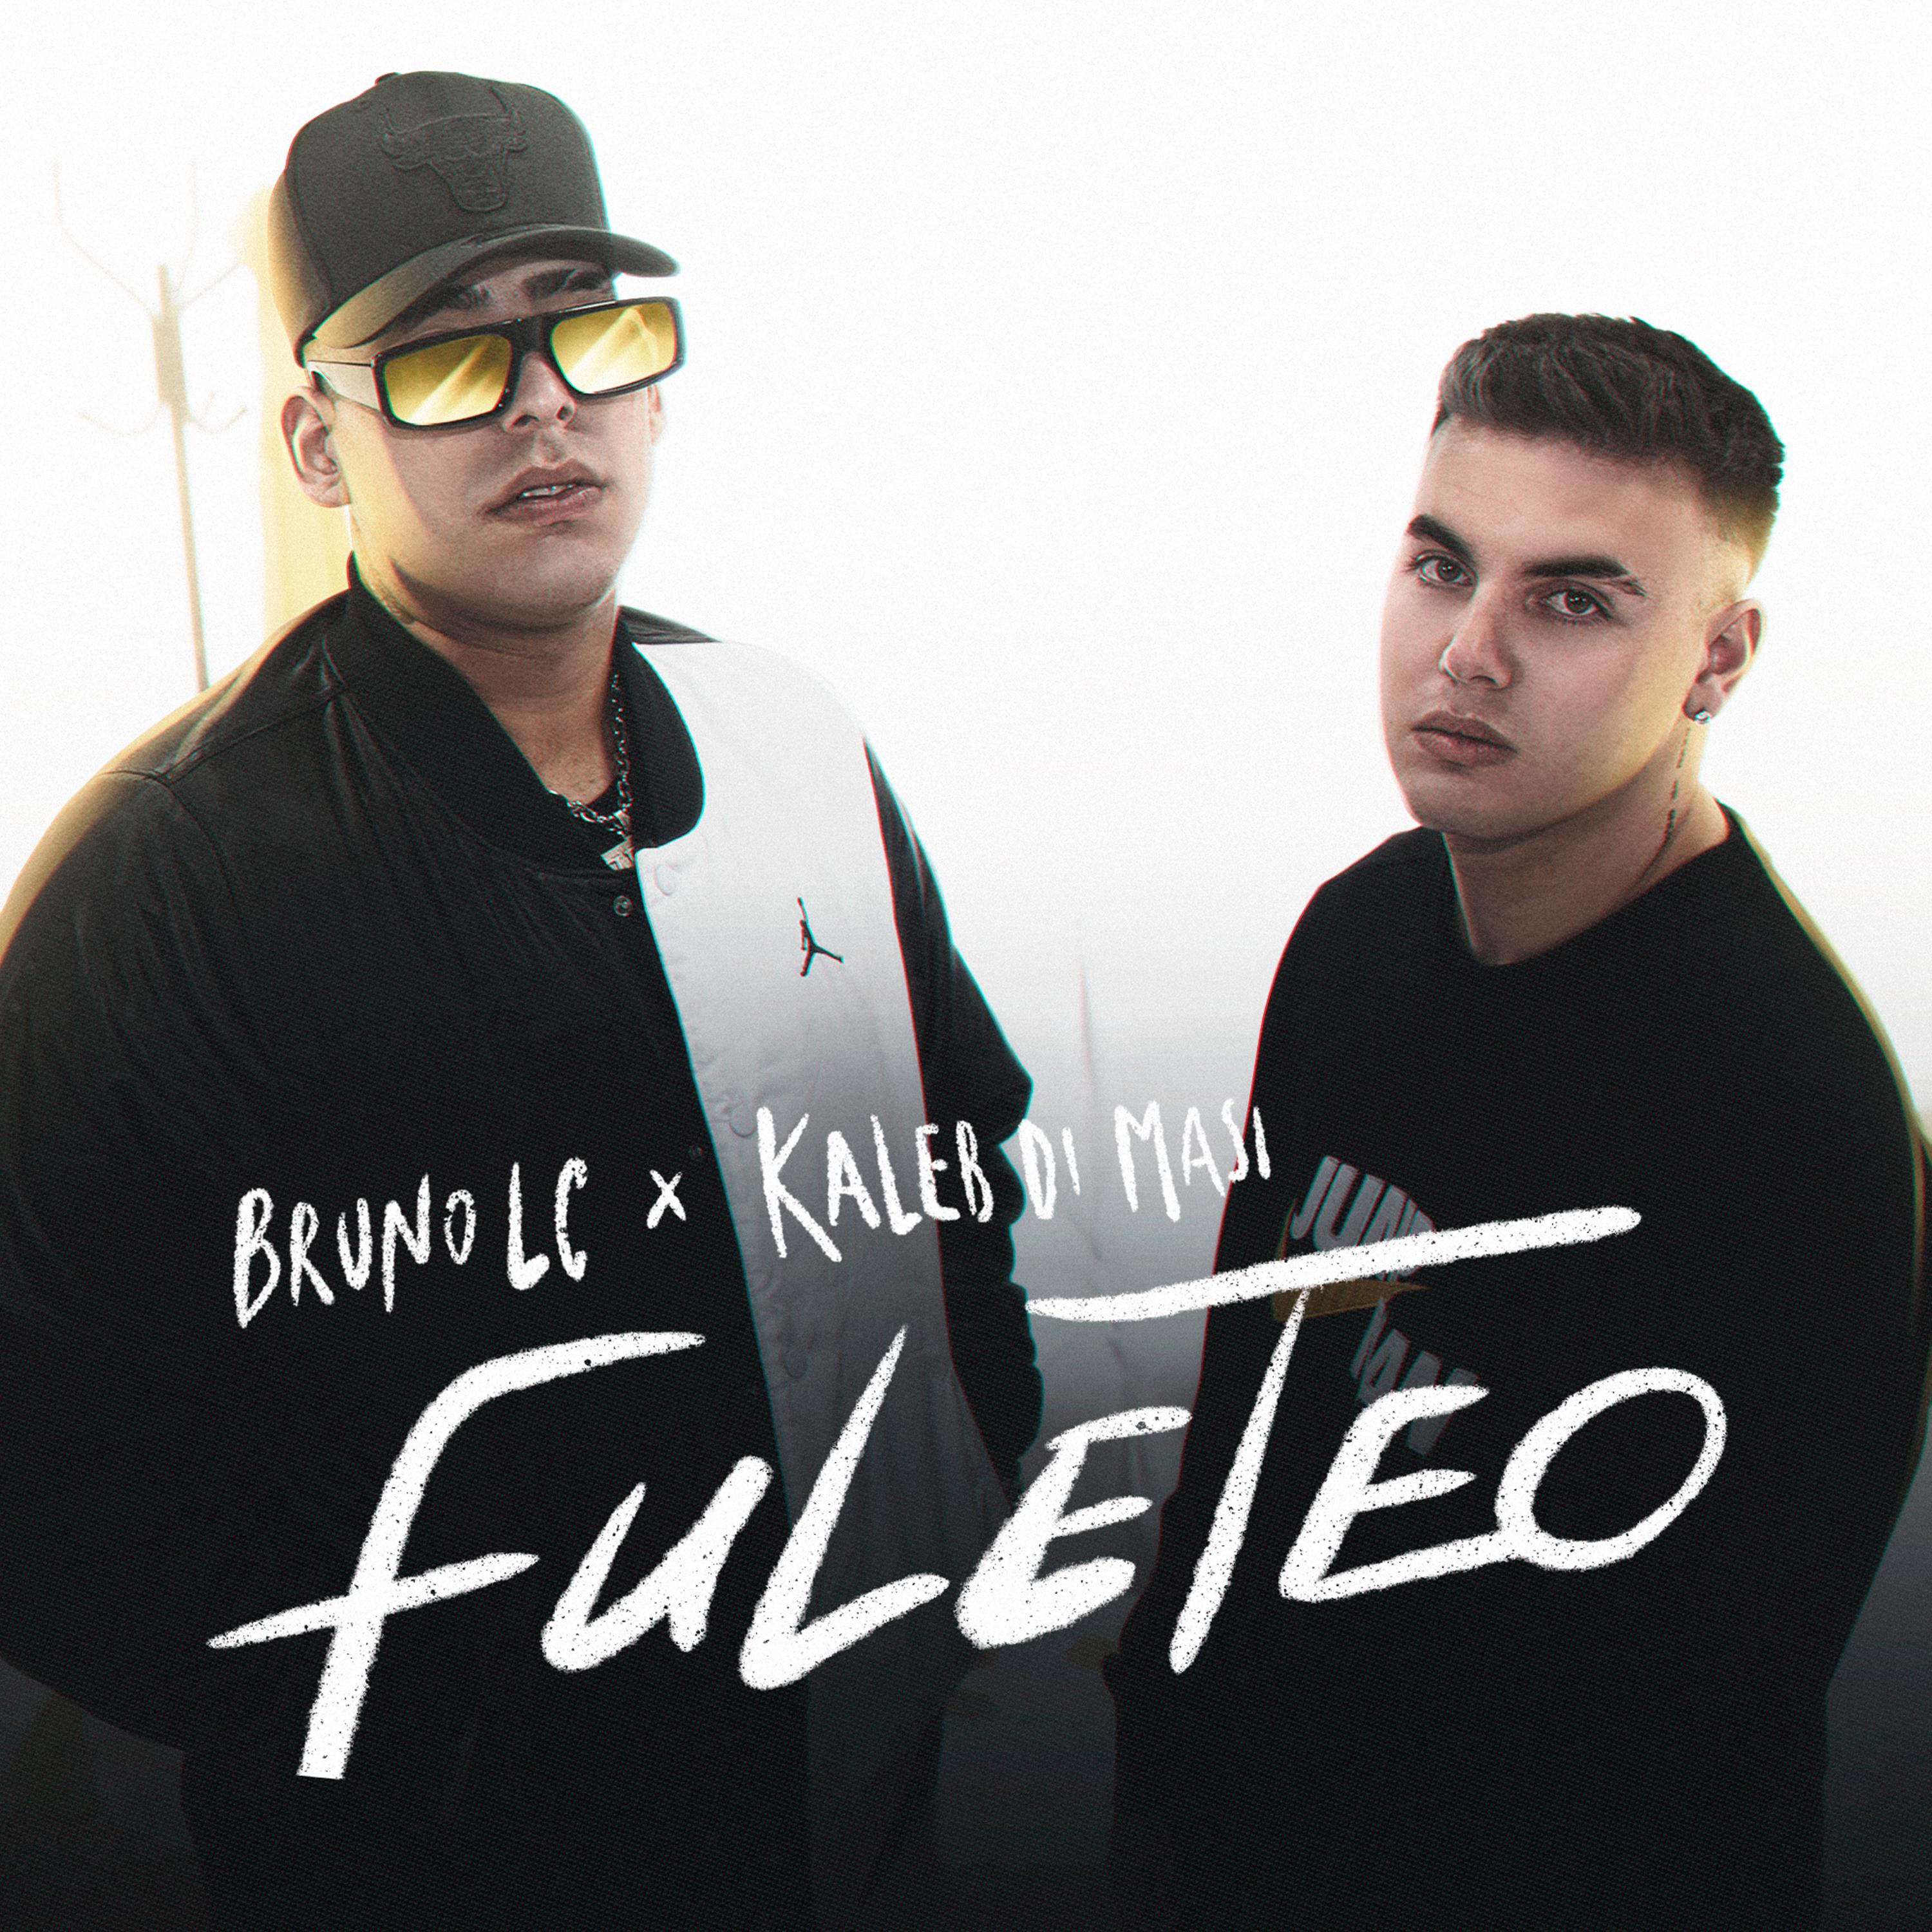 Bruno LC - Fuleteo